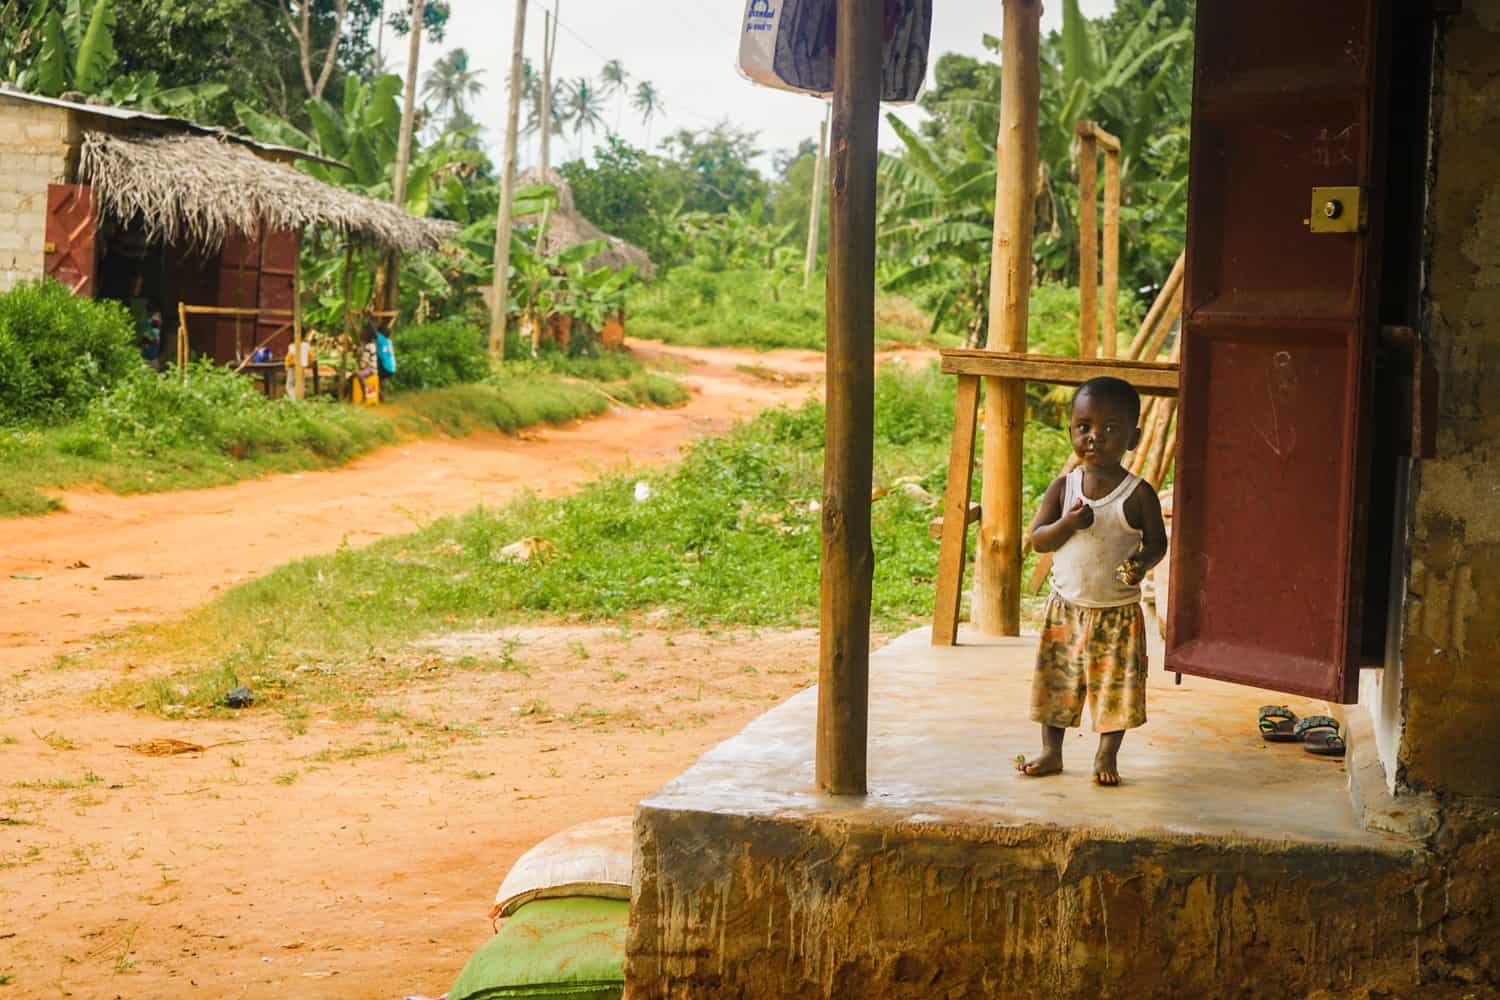 Child in Tanzania village